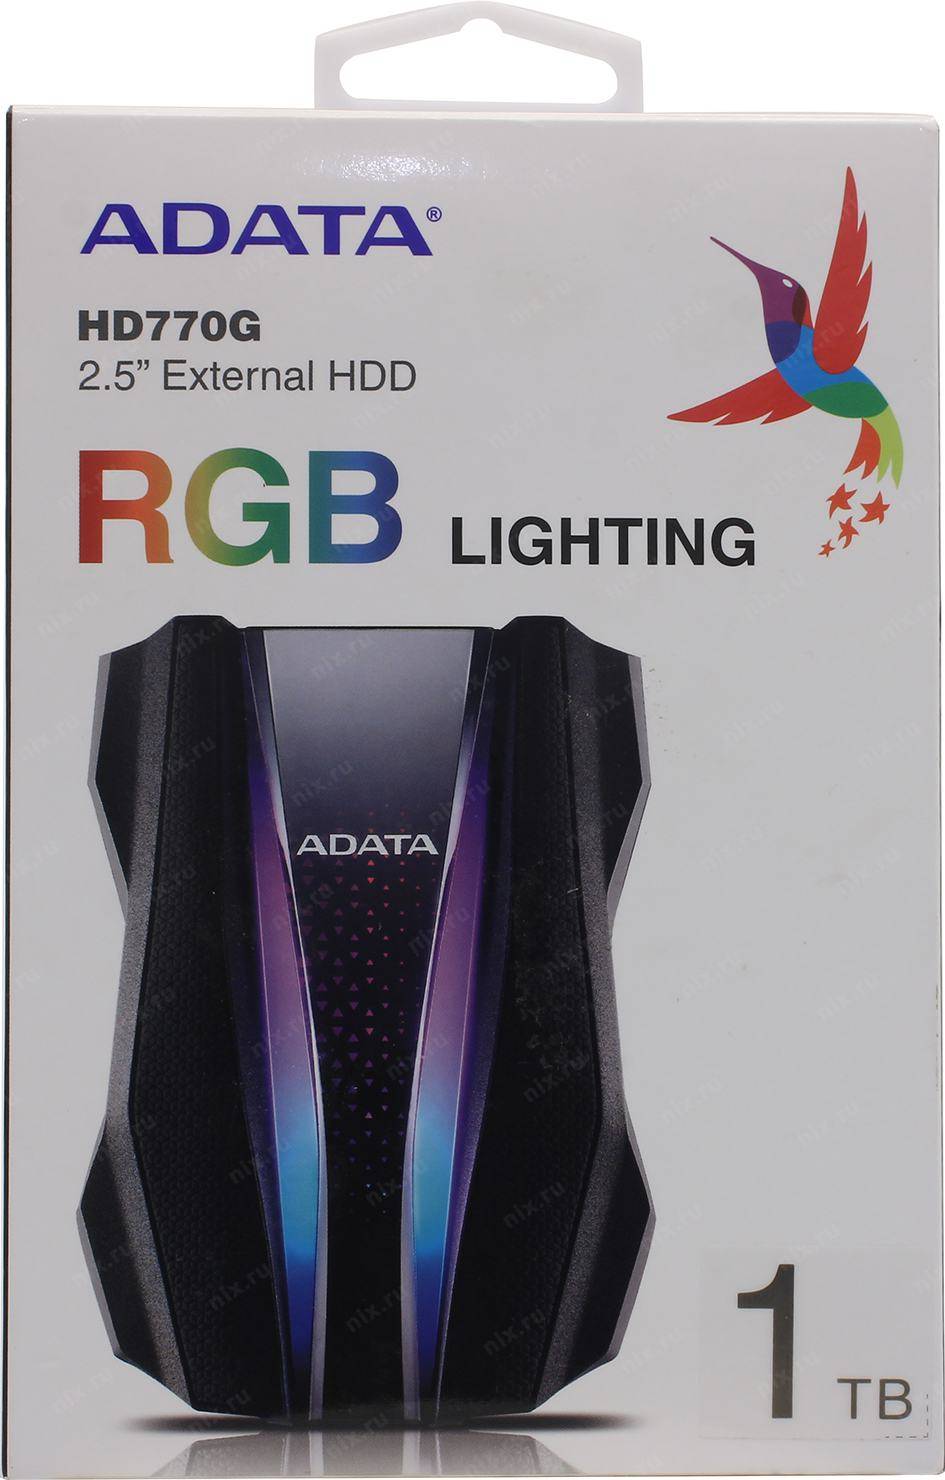 Внешний жесткий диск 1TB A-DATA HD770G, 2,5″ , USB 3.2, противоударный, водонепроницаемый, черный